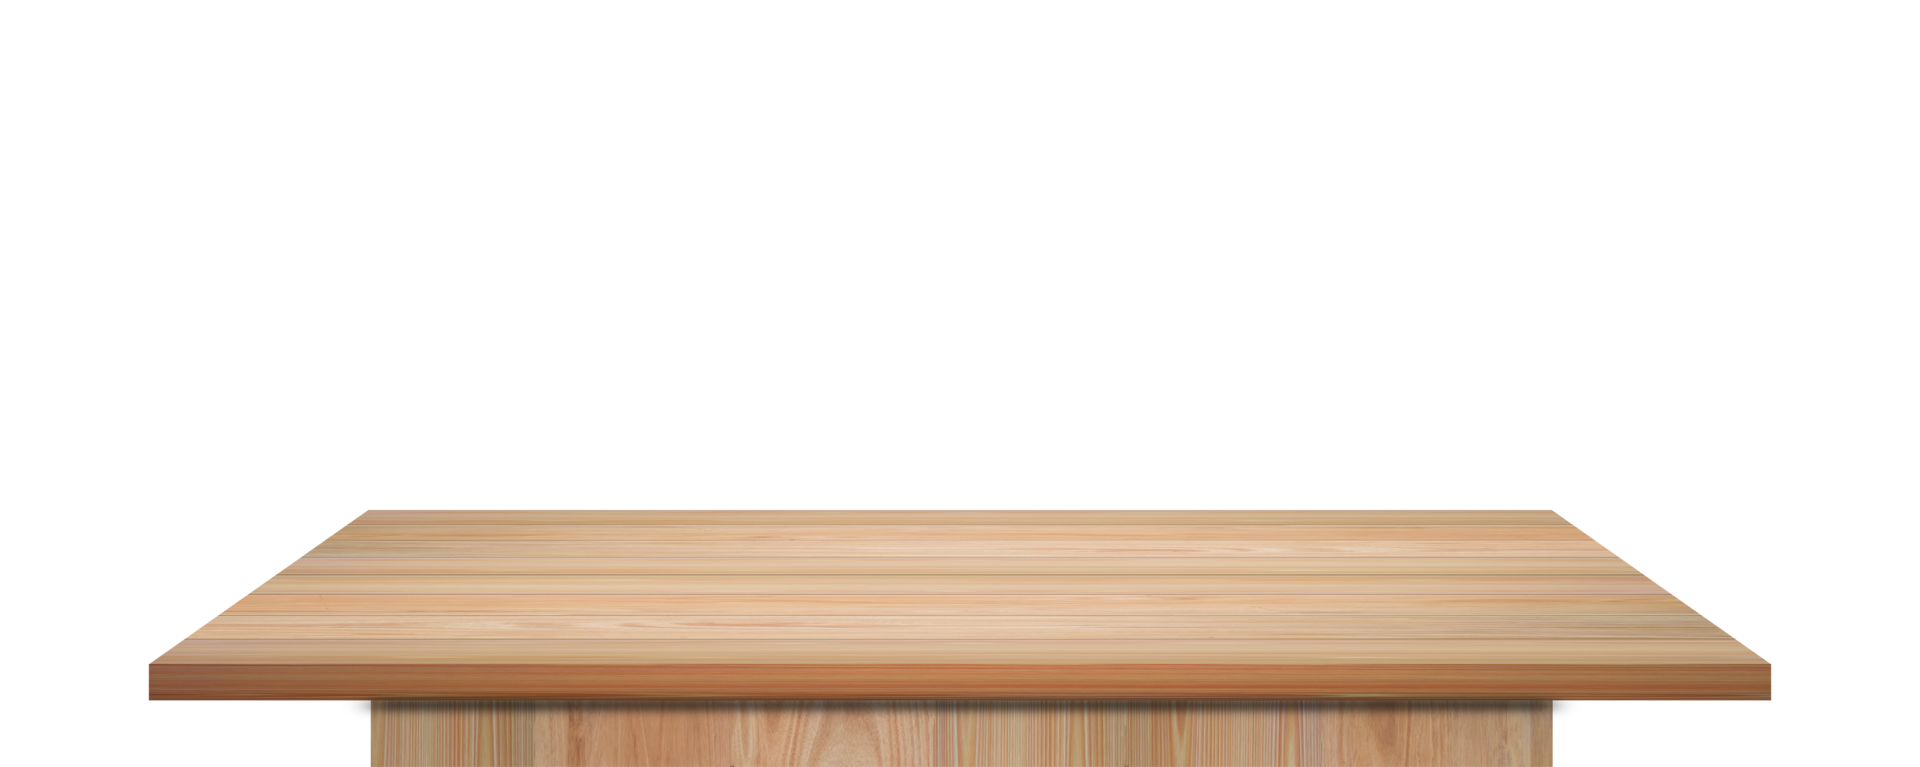 Plantilla de cocina aislada mesa blanca de madera con tabla de cortar vacía  archivo png con fondo transparente